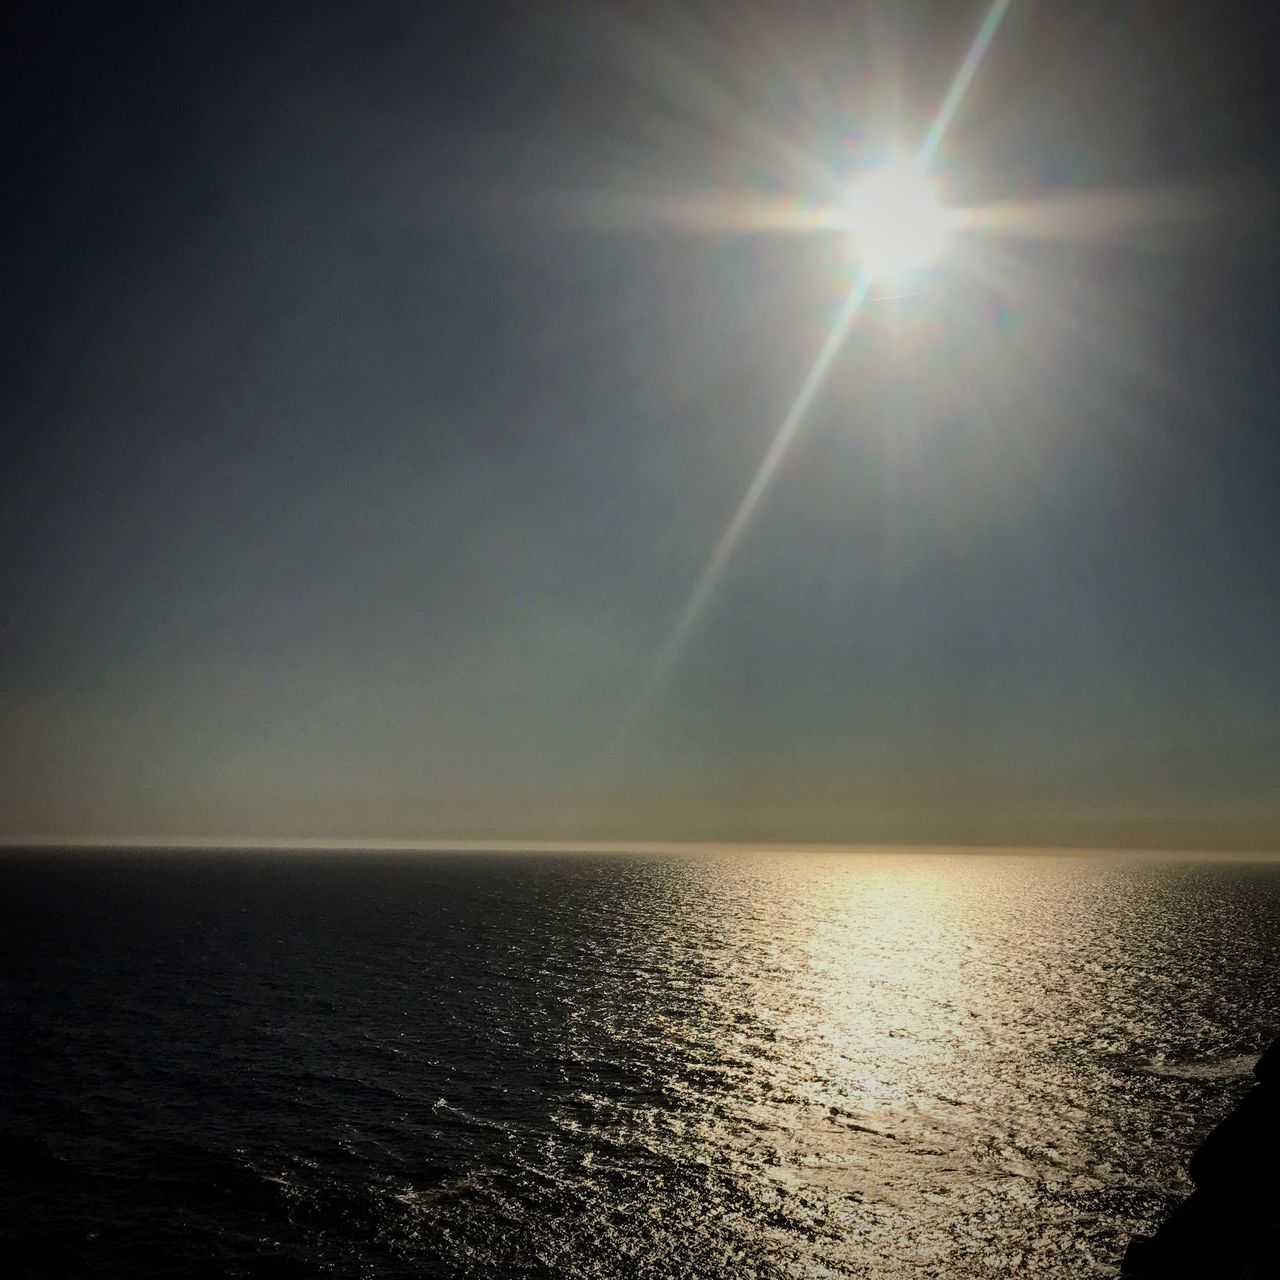 SCENIC VIEW OF SEA AGAINST BRIGHT SUN IN SKY